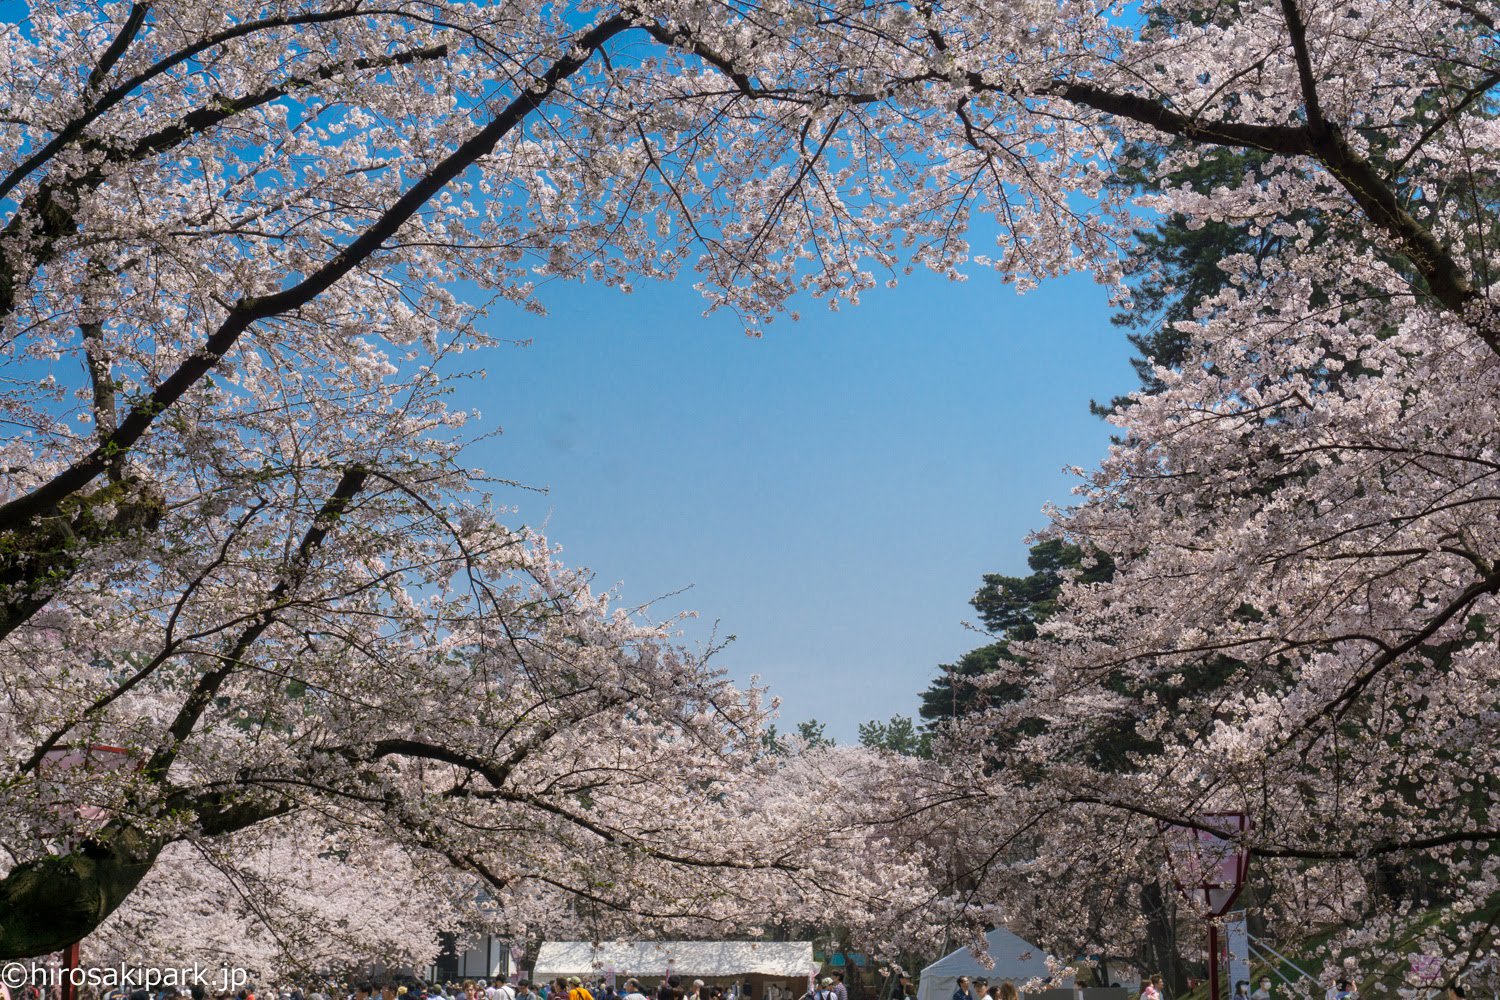 弘前公園 در توییتر 弘前公園の桜のハートも 見頃となっています 弘前さくらまつり 弘前公園 桜 さくら Sakura Hirosaki Park